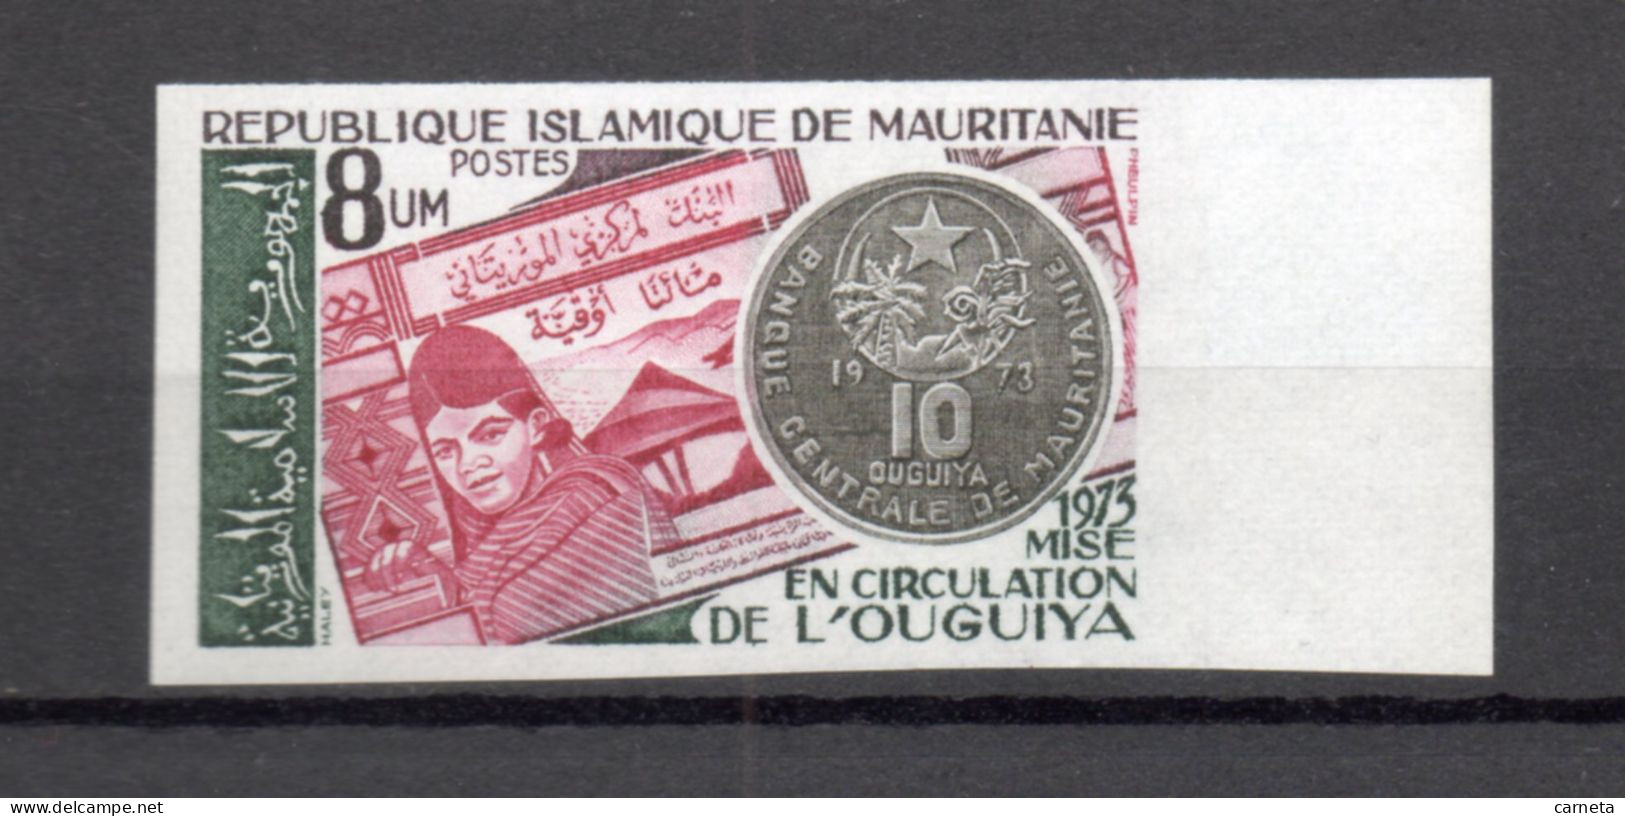 MAURITANIE    N° 322  NON DENTELE    NEUF SANS CHARNIERE   COTE ? €    MONNAIE - Mauritanie (1960-...)